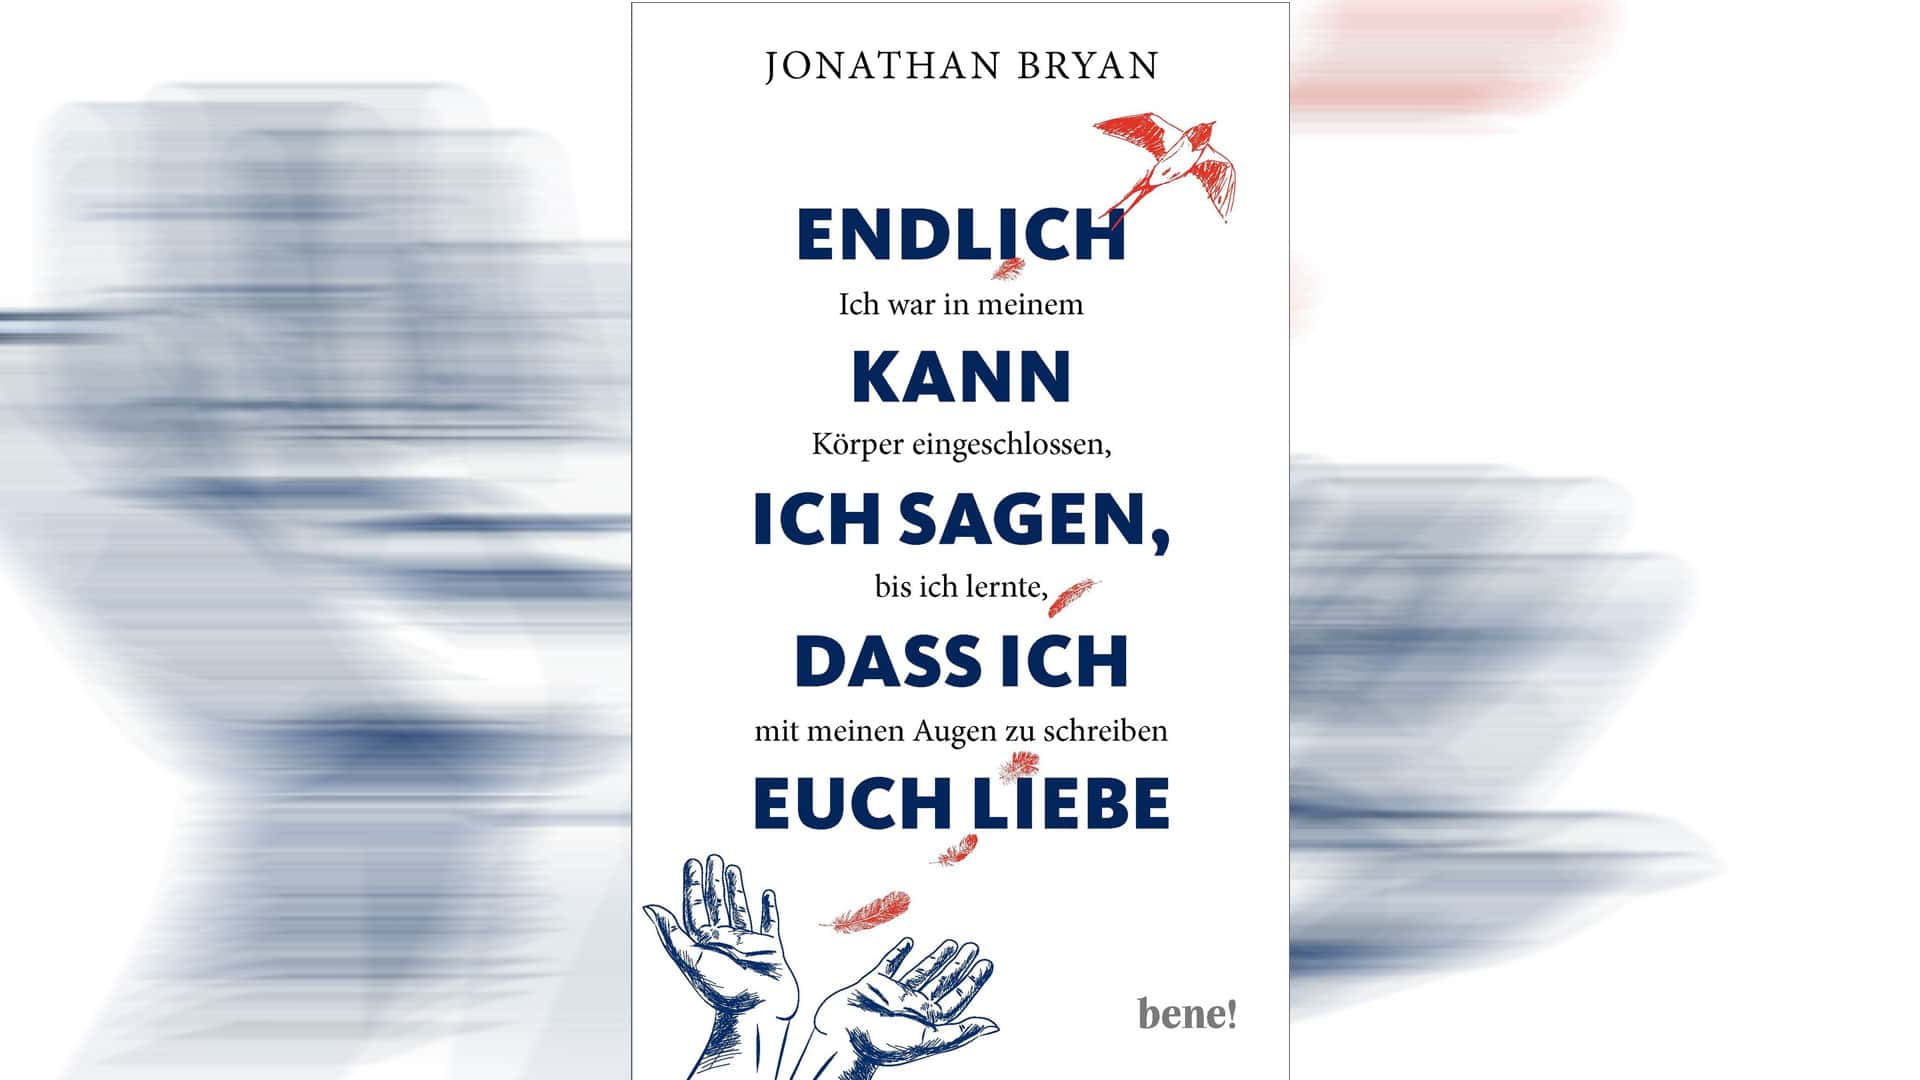 Der zwölfjährige Jonathan Bryan hat seine Lebensgeschichte aufgeschrieben, die jetzt ins Deutsche übersetzt wurde